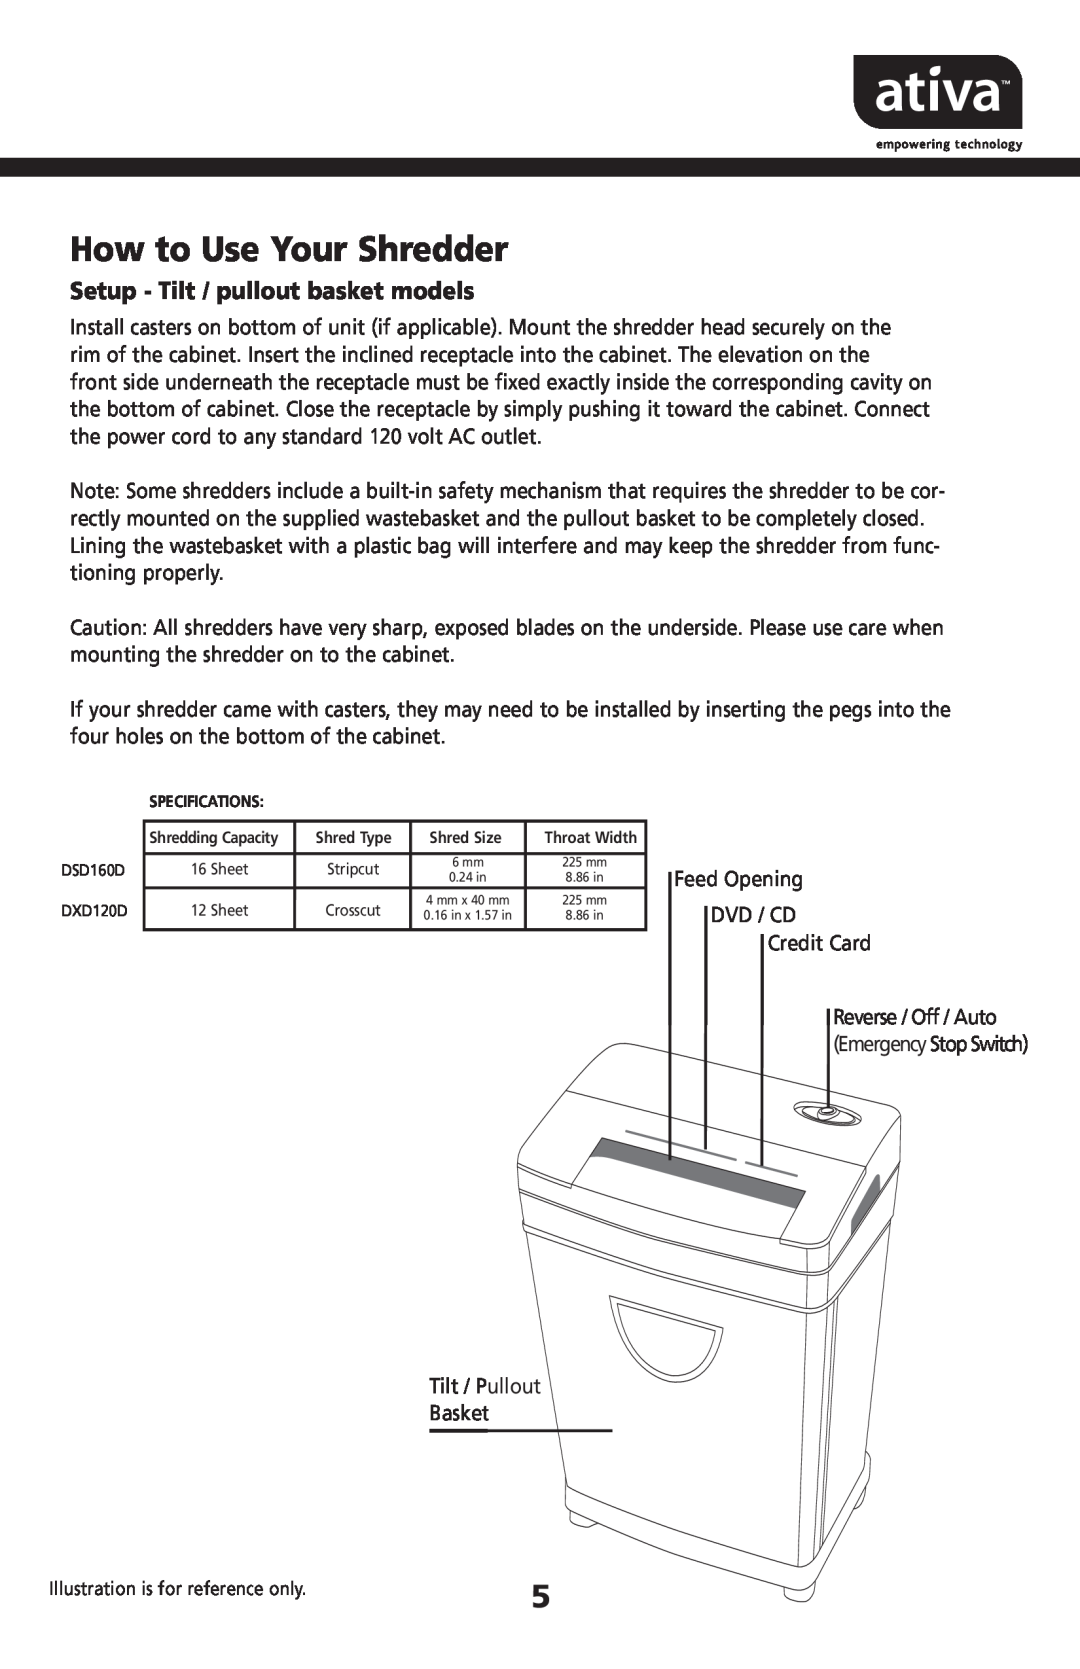 Ativa DXD120D, DSD160D manual How to Use Your Shredder, Setup - Tilt / pullout basket models 